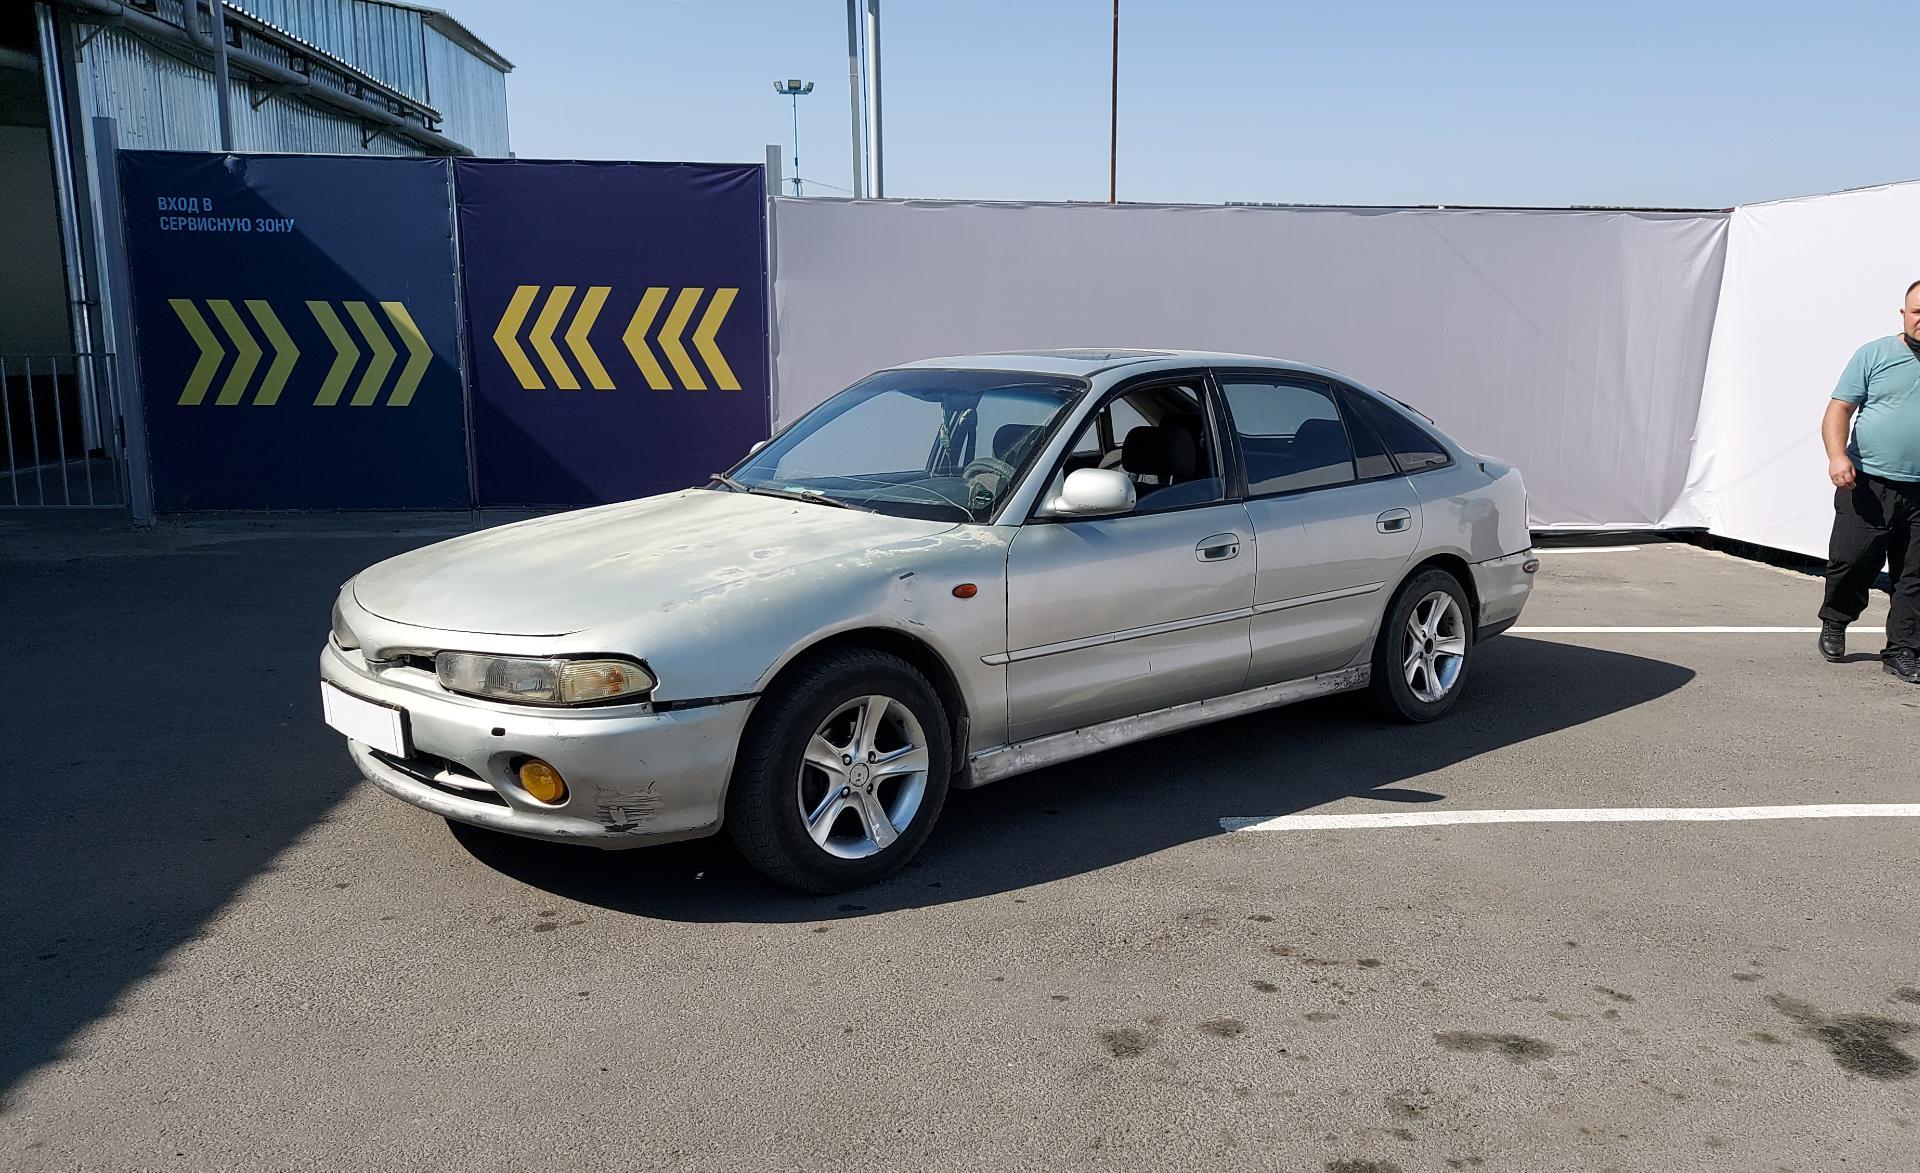 Купить Mitsubishi Galant 1993 года в Алматы, цена 500